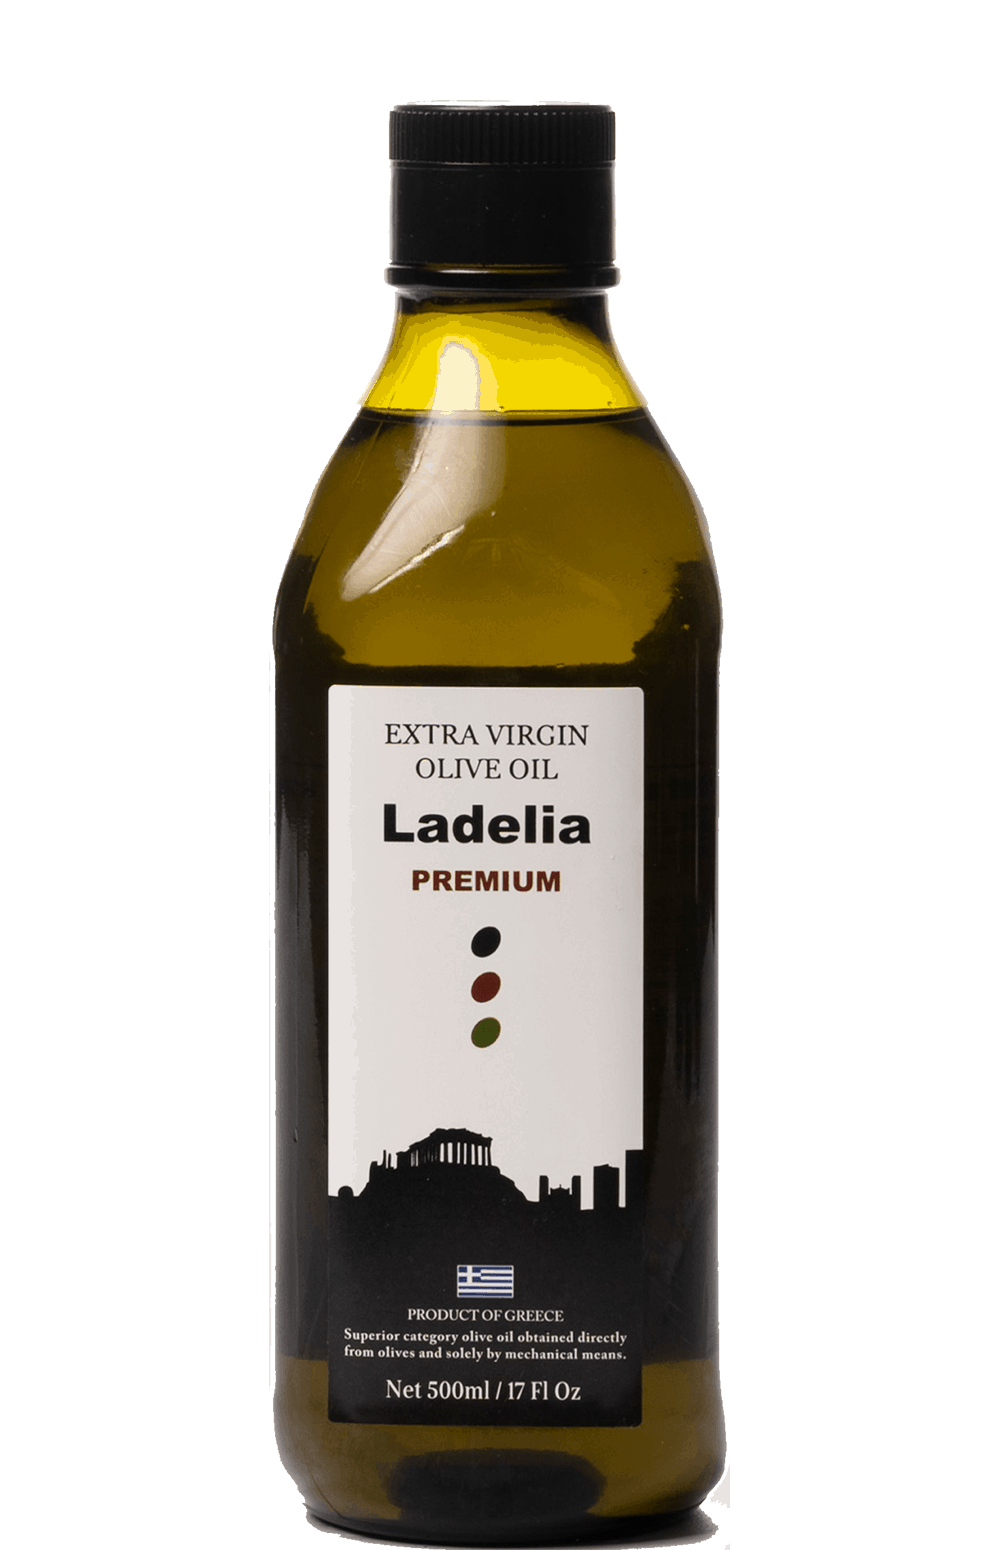 LADELIA PREMIUM